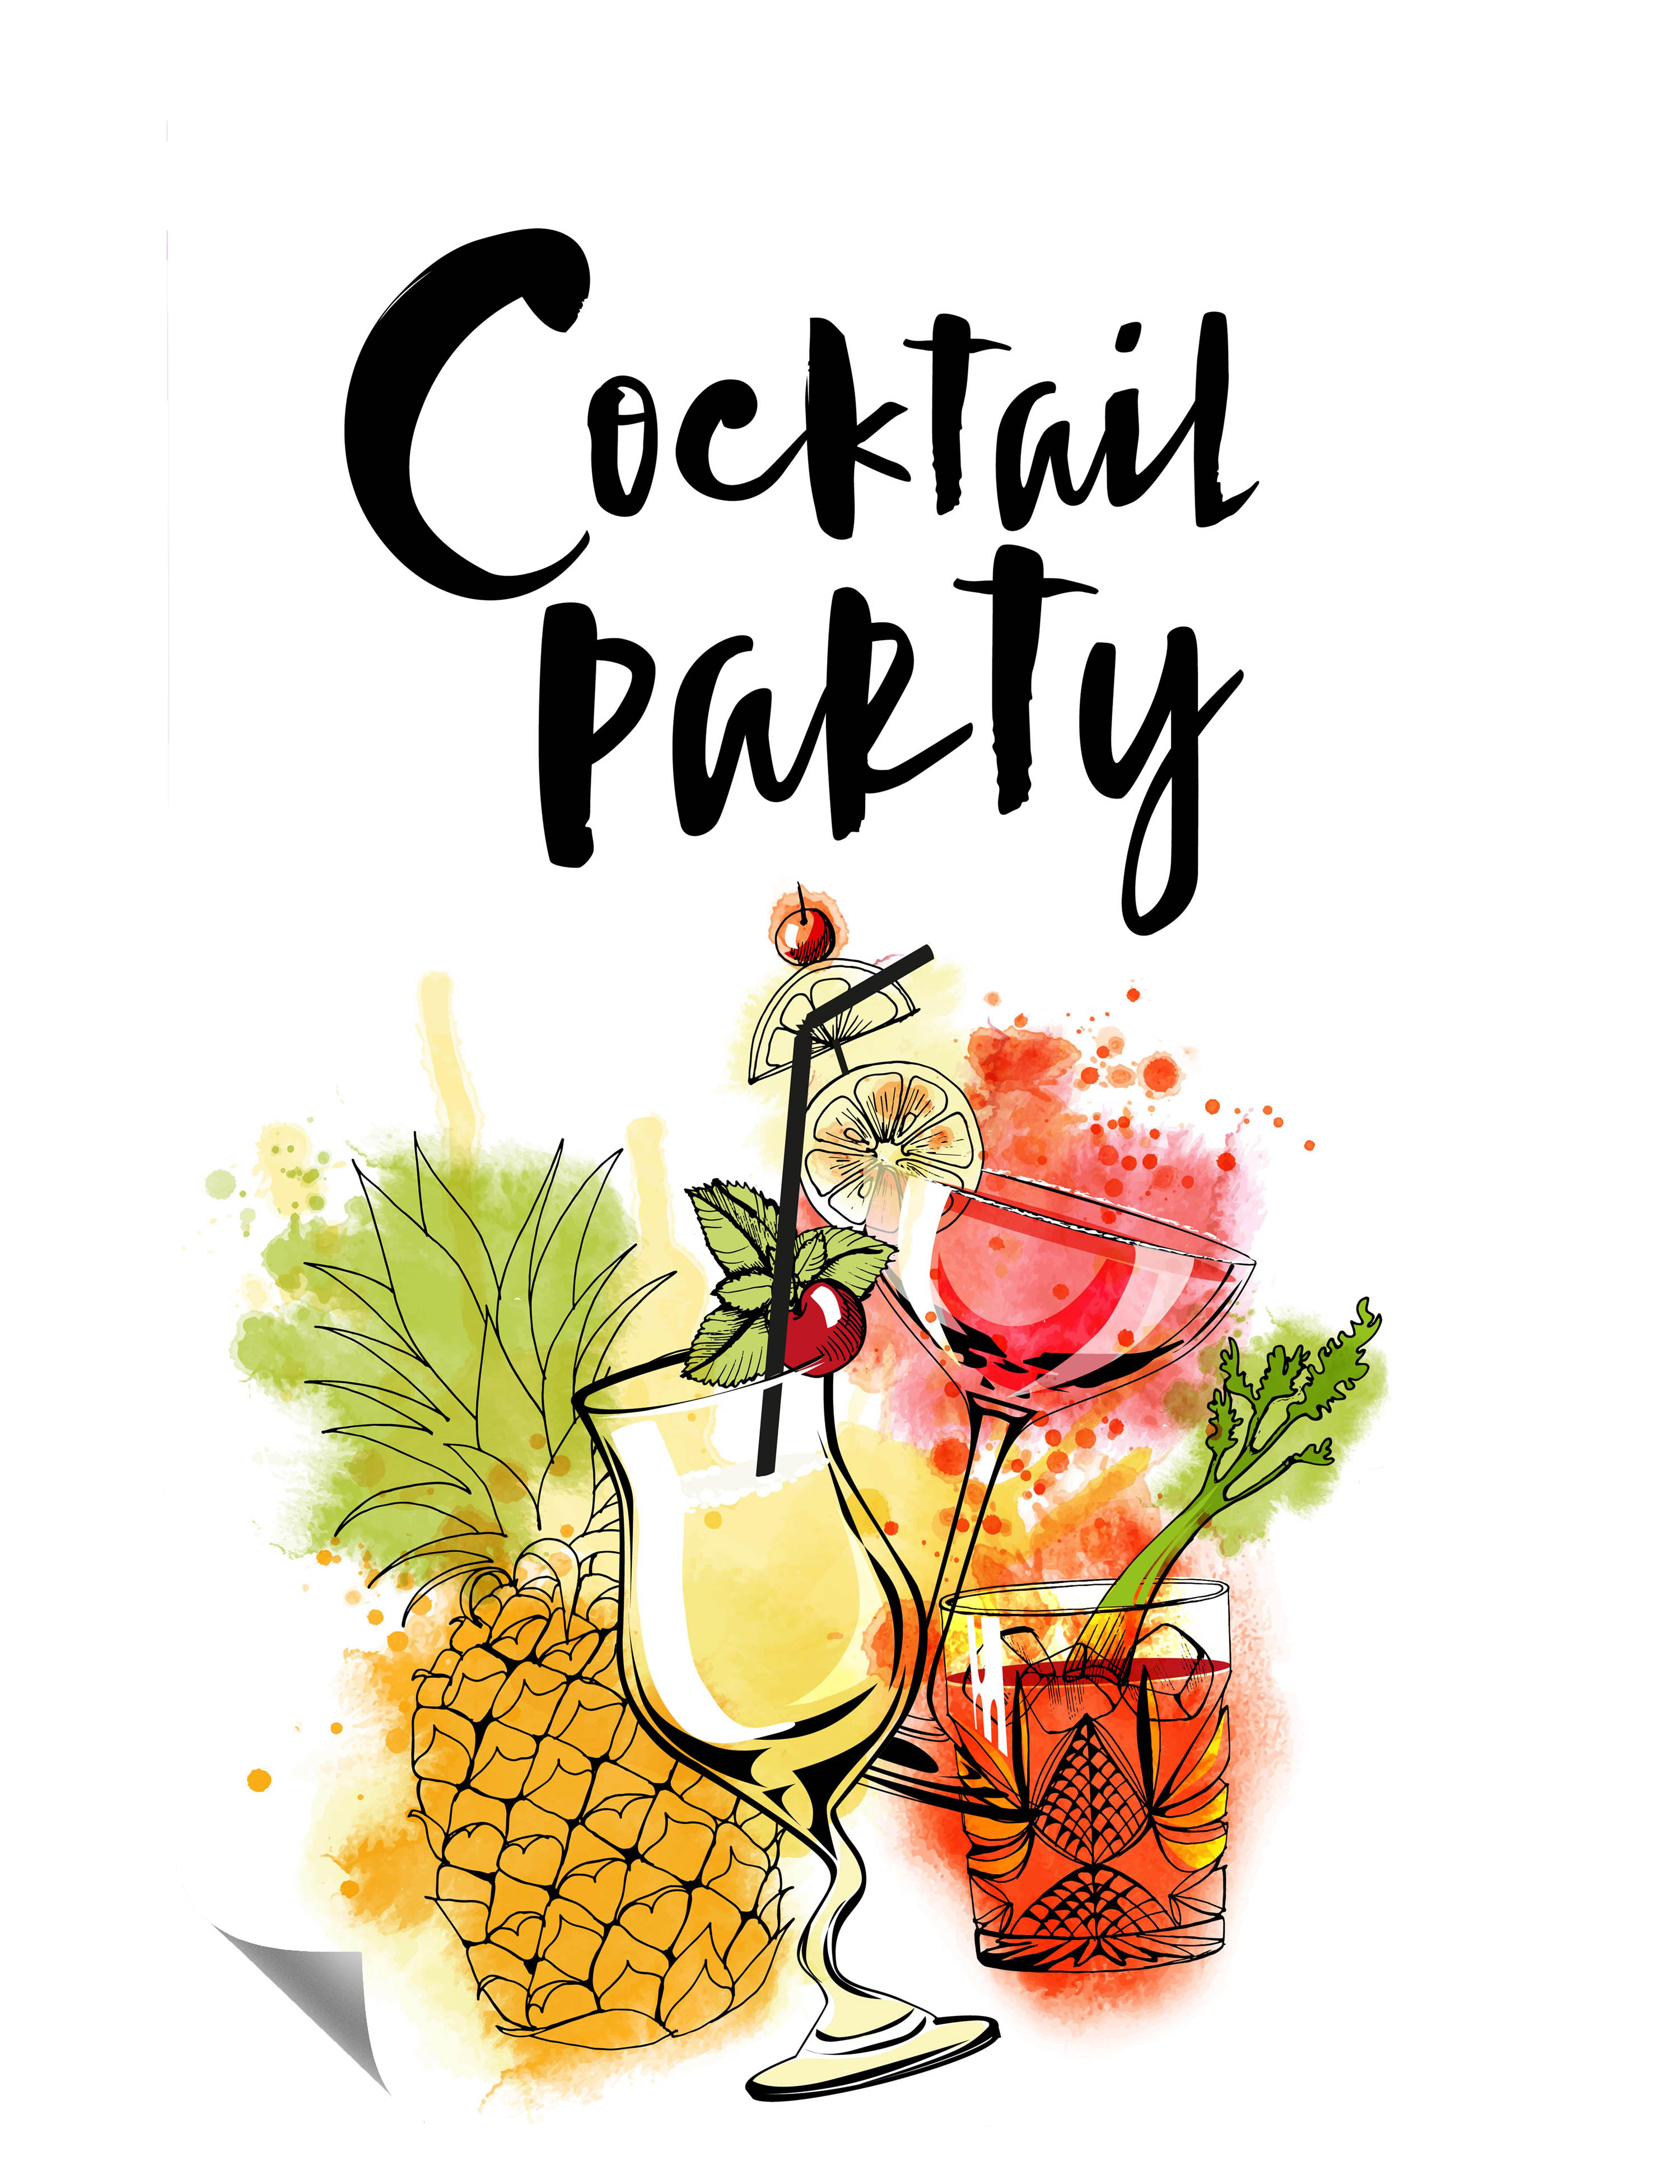 Cocktail Party Gläser Ananas Minze Gemalt Kunstdruck Poster P0197